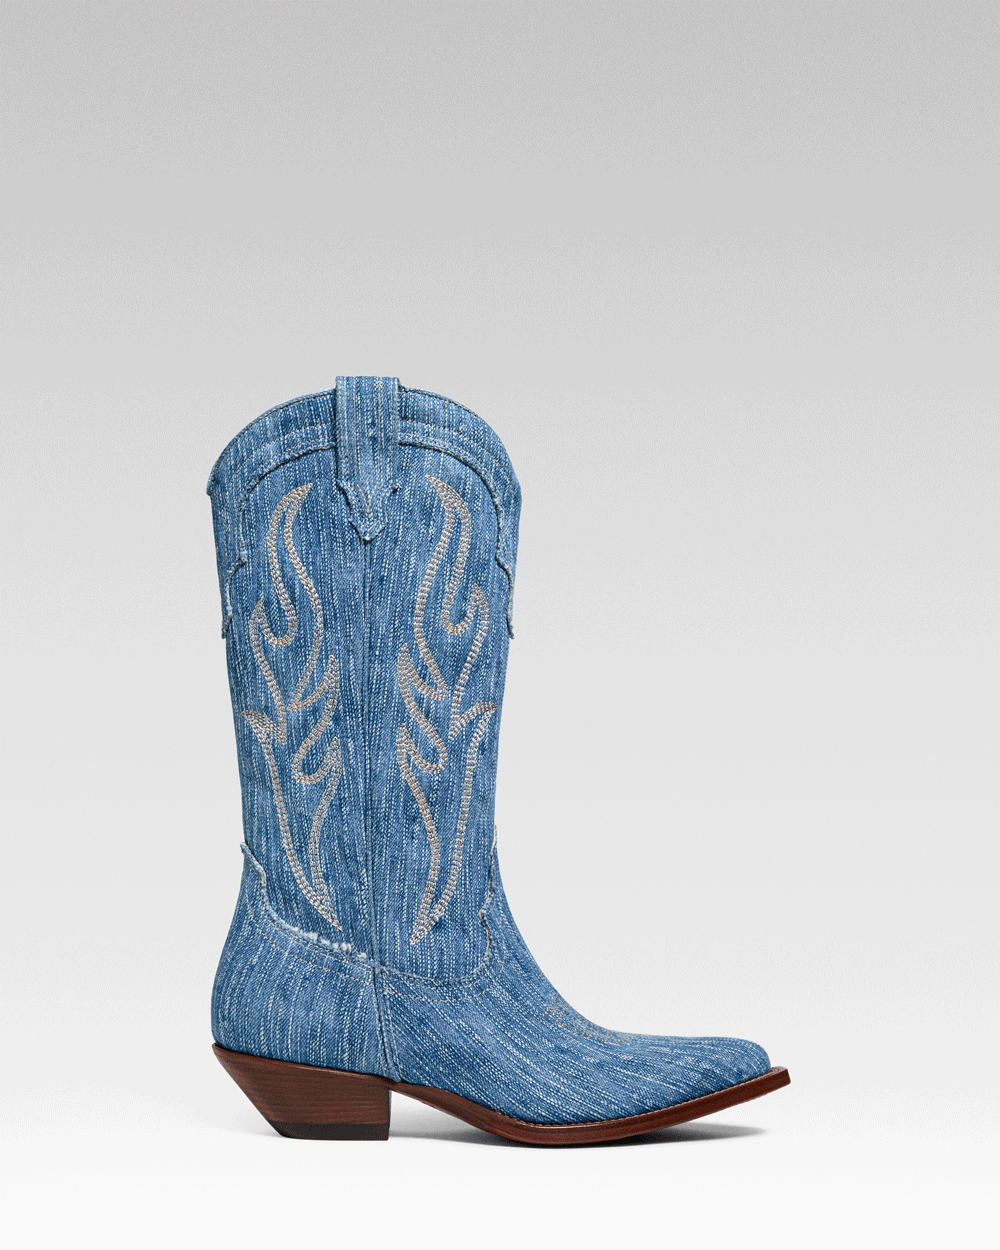 SANTA FE Women's Cowboy Boots in Light Blue Jeans | Ecru Embroidery